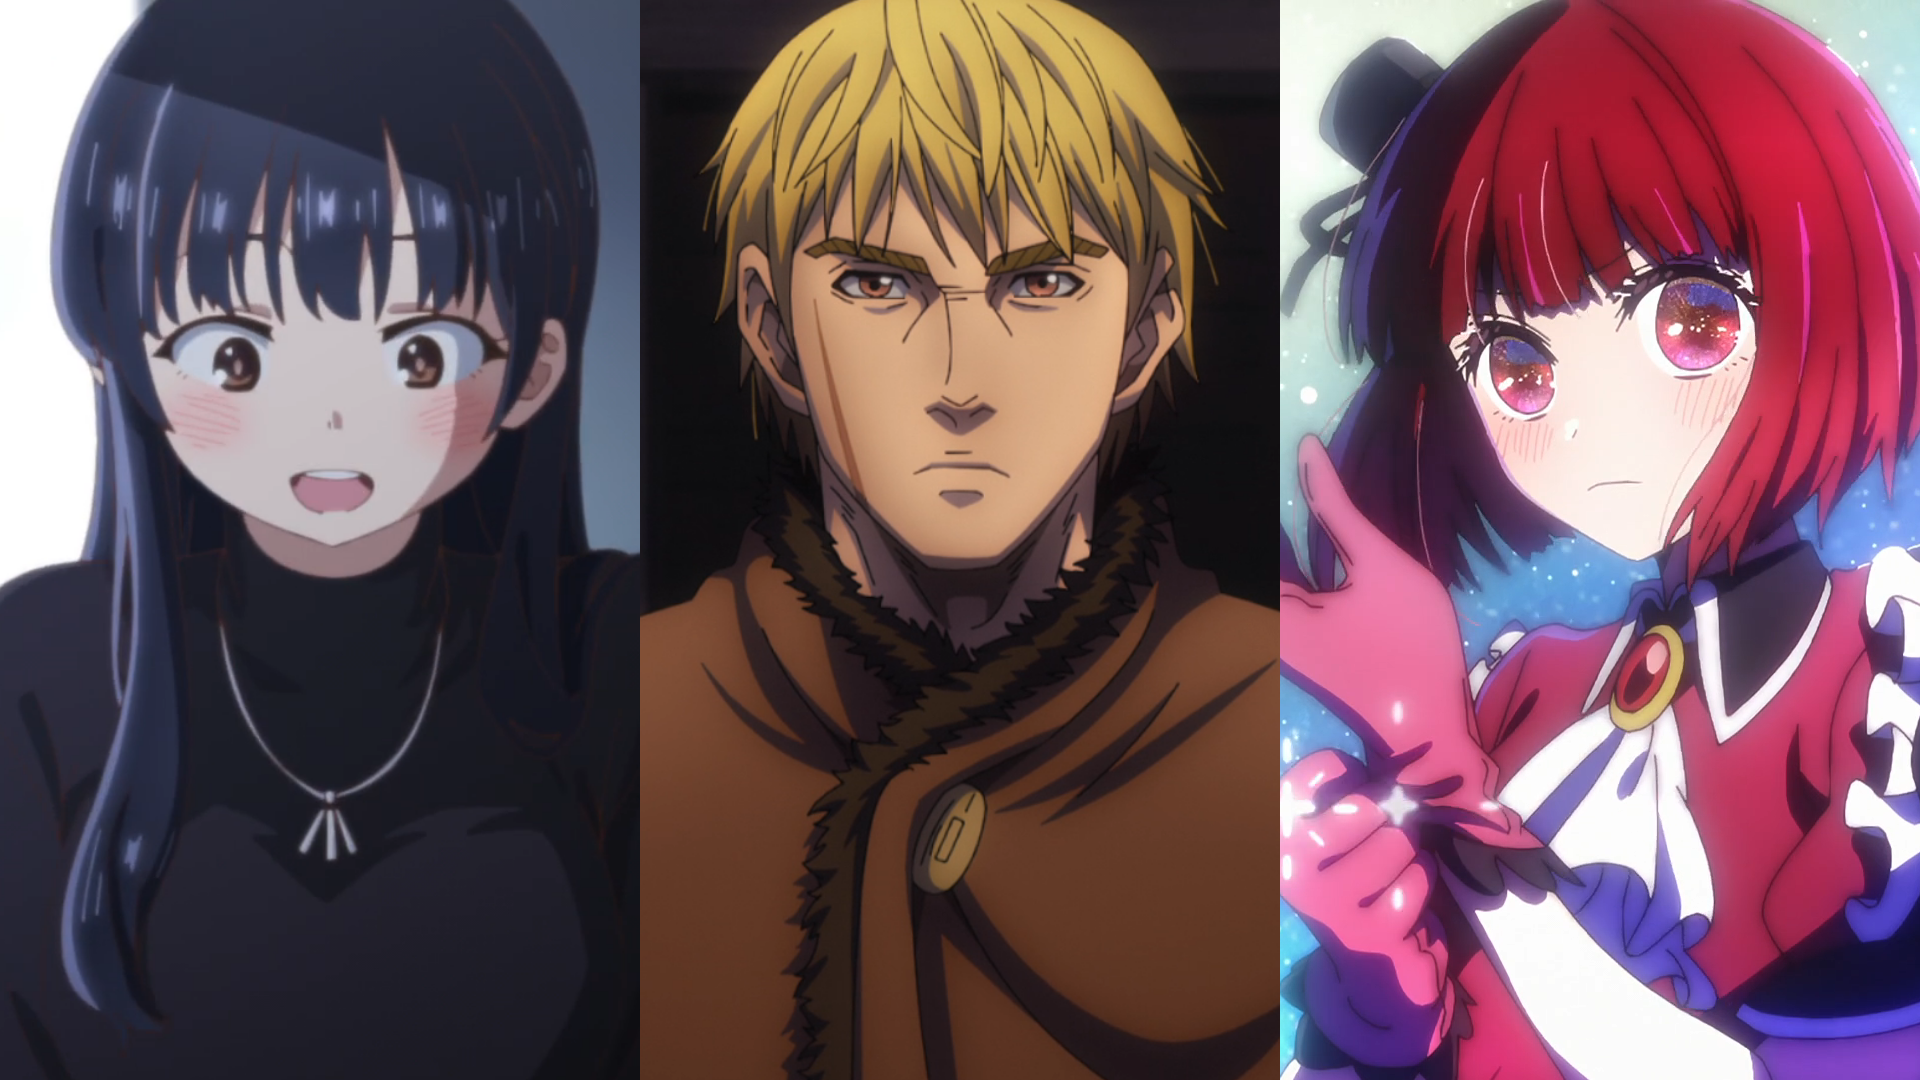 Anime Trending - The Marginal Service - Anime Trailer!